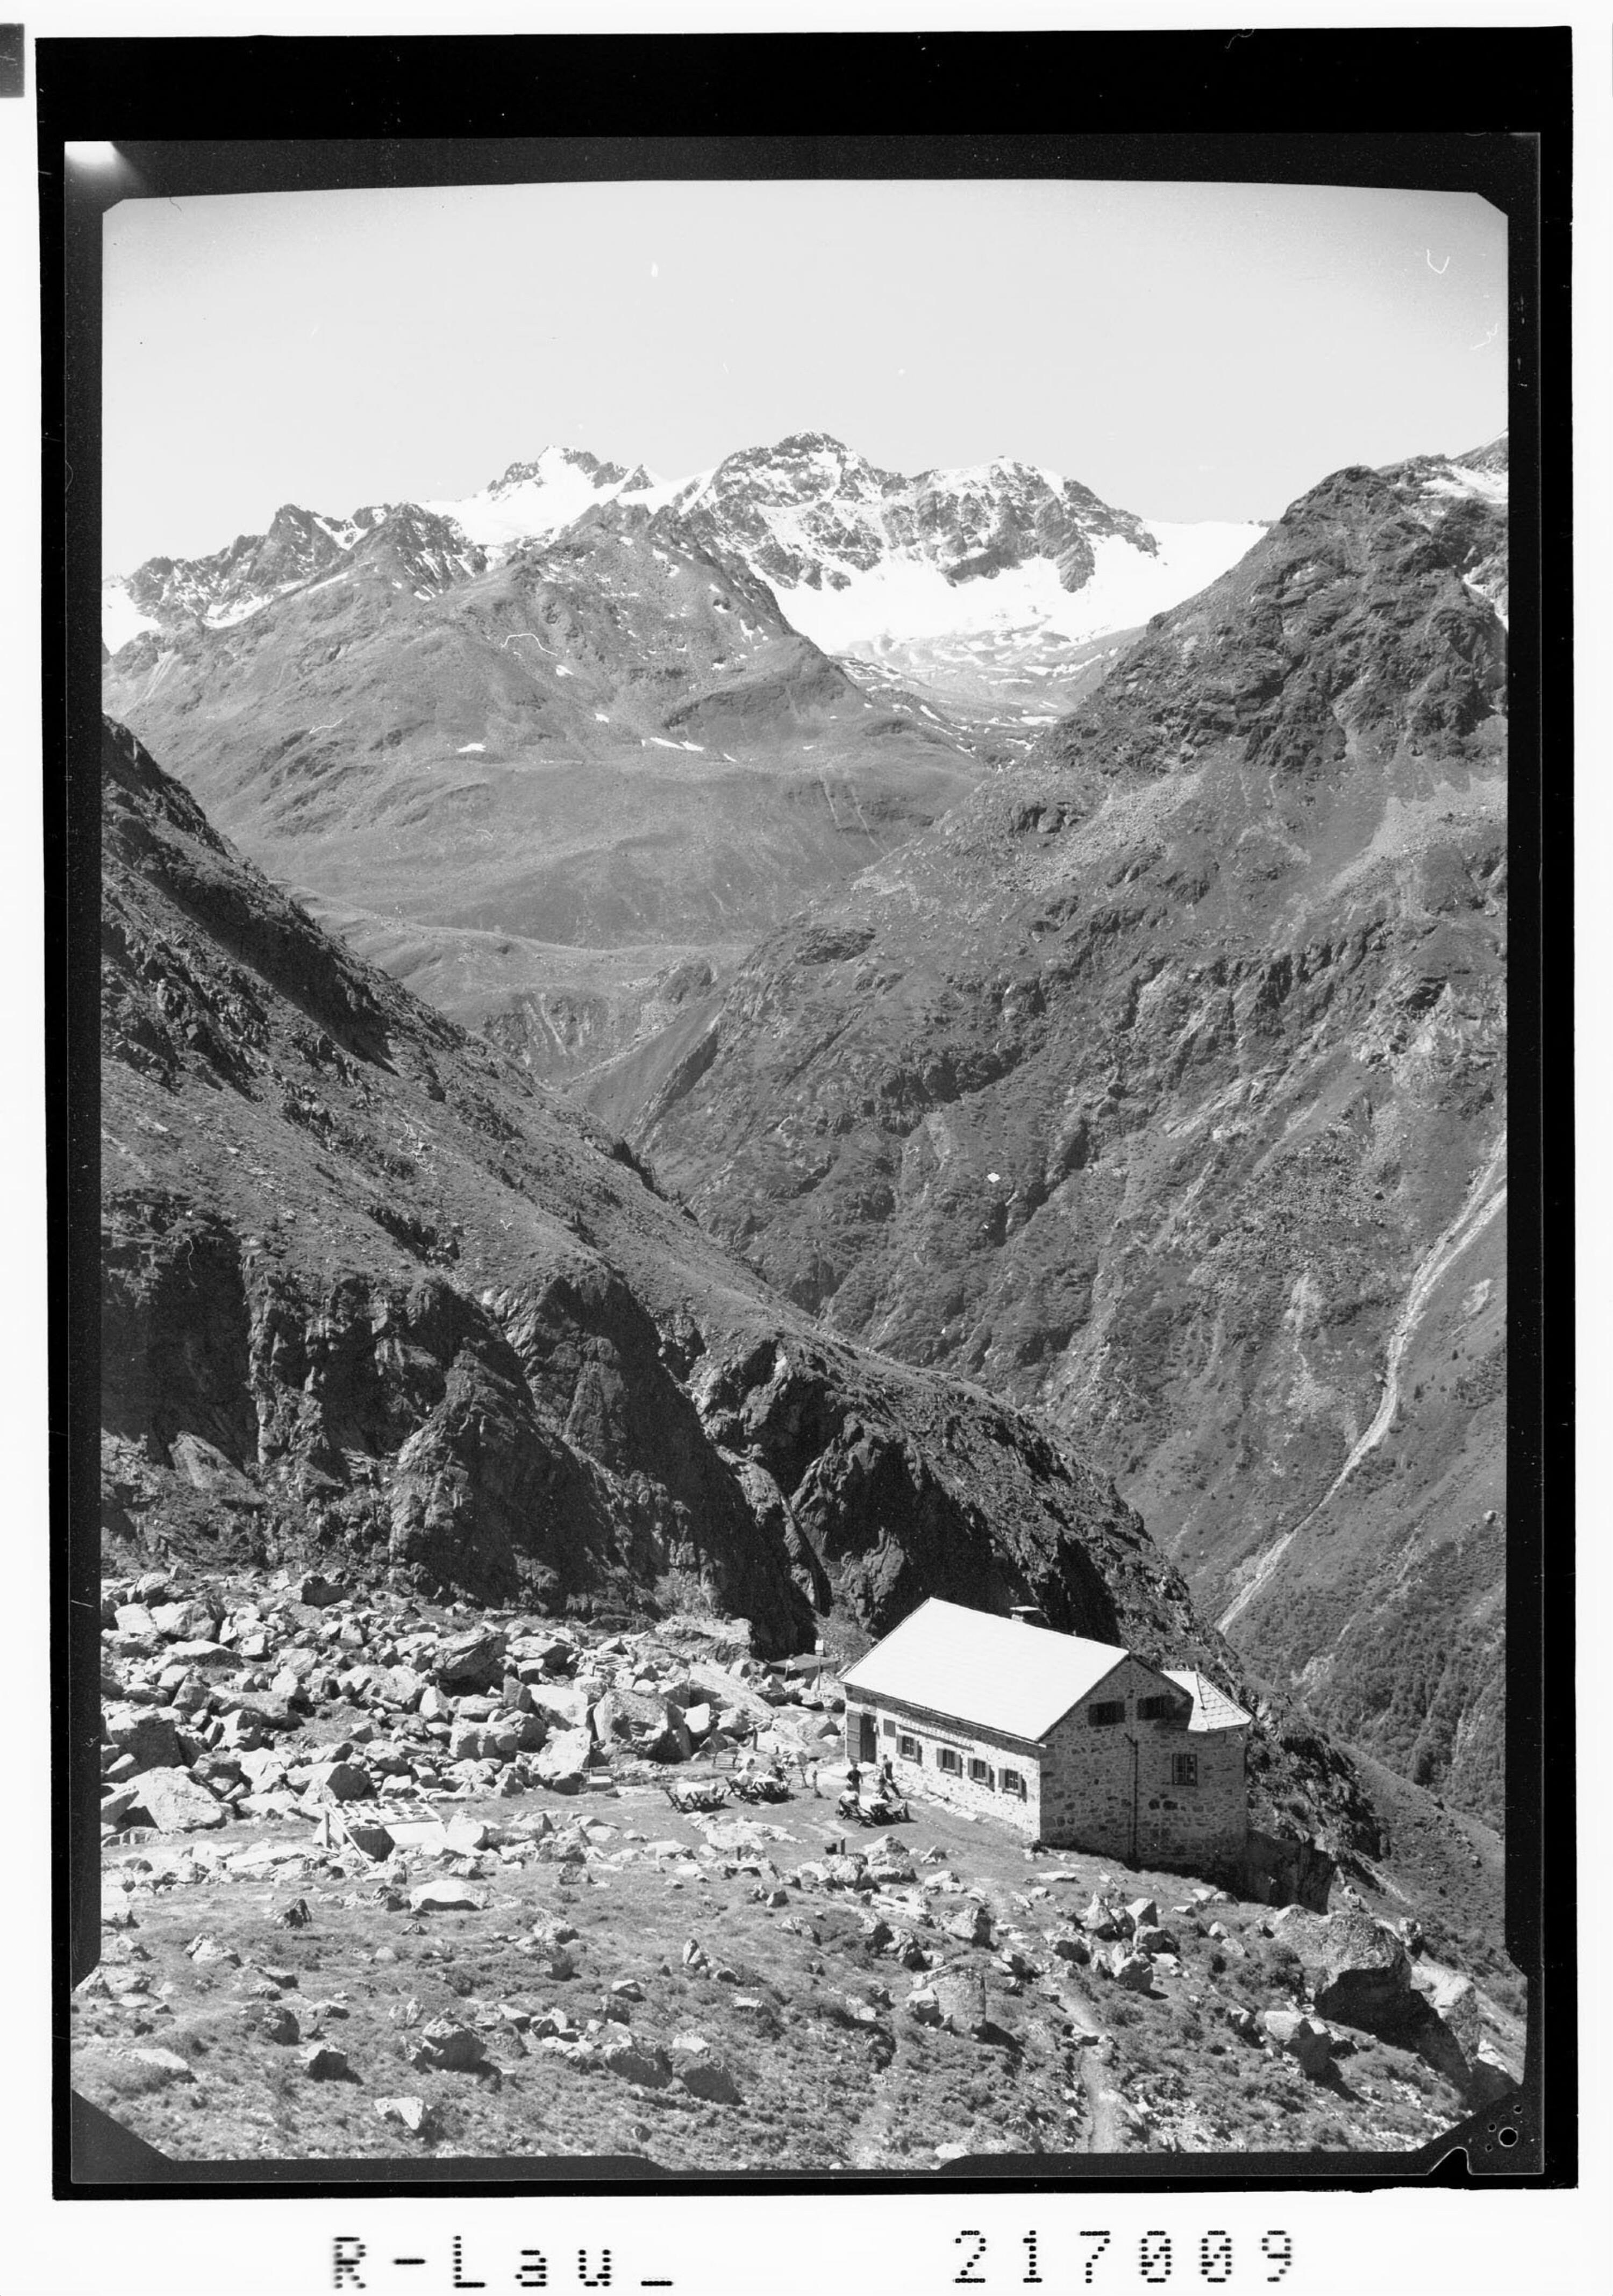 Neue Chemnitzer Hütte 2323 m gegen Seekogel 3358 m und Seekarlesschneid 3208 m, Pitztal / Tirol></div>


    <hr>
    <div class=